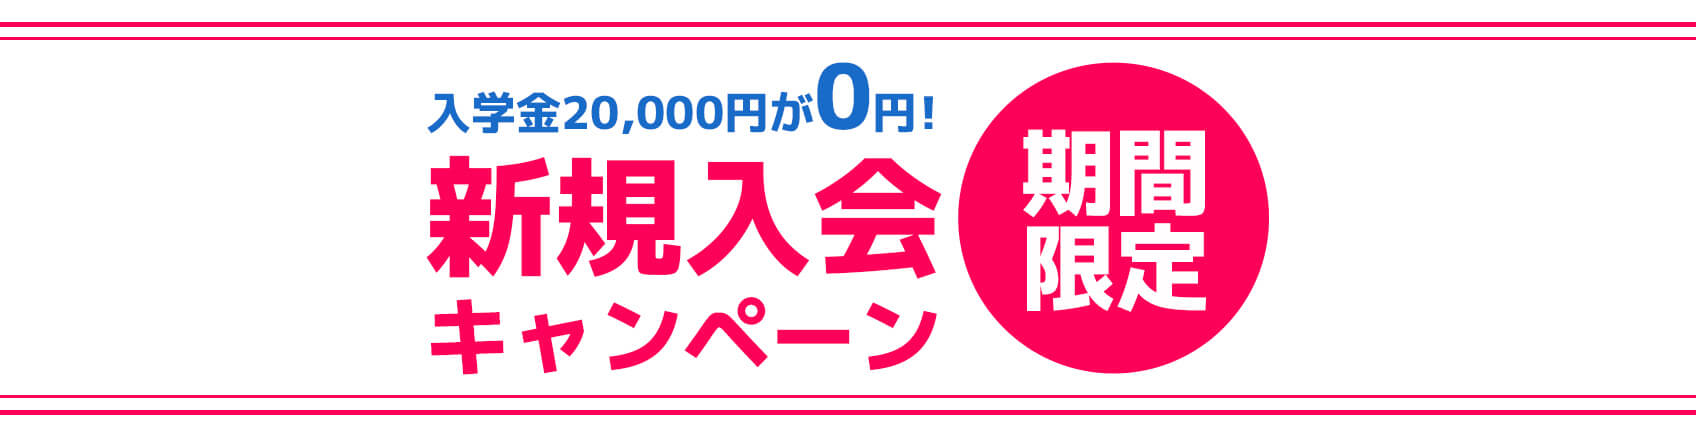 入学金 20,000円→キャンペーン期間につき無料